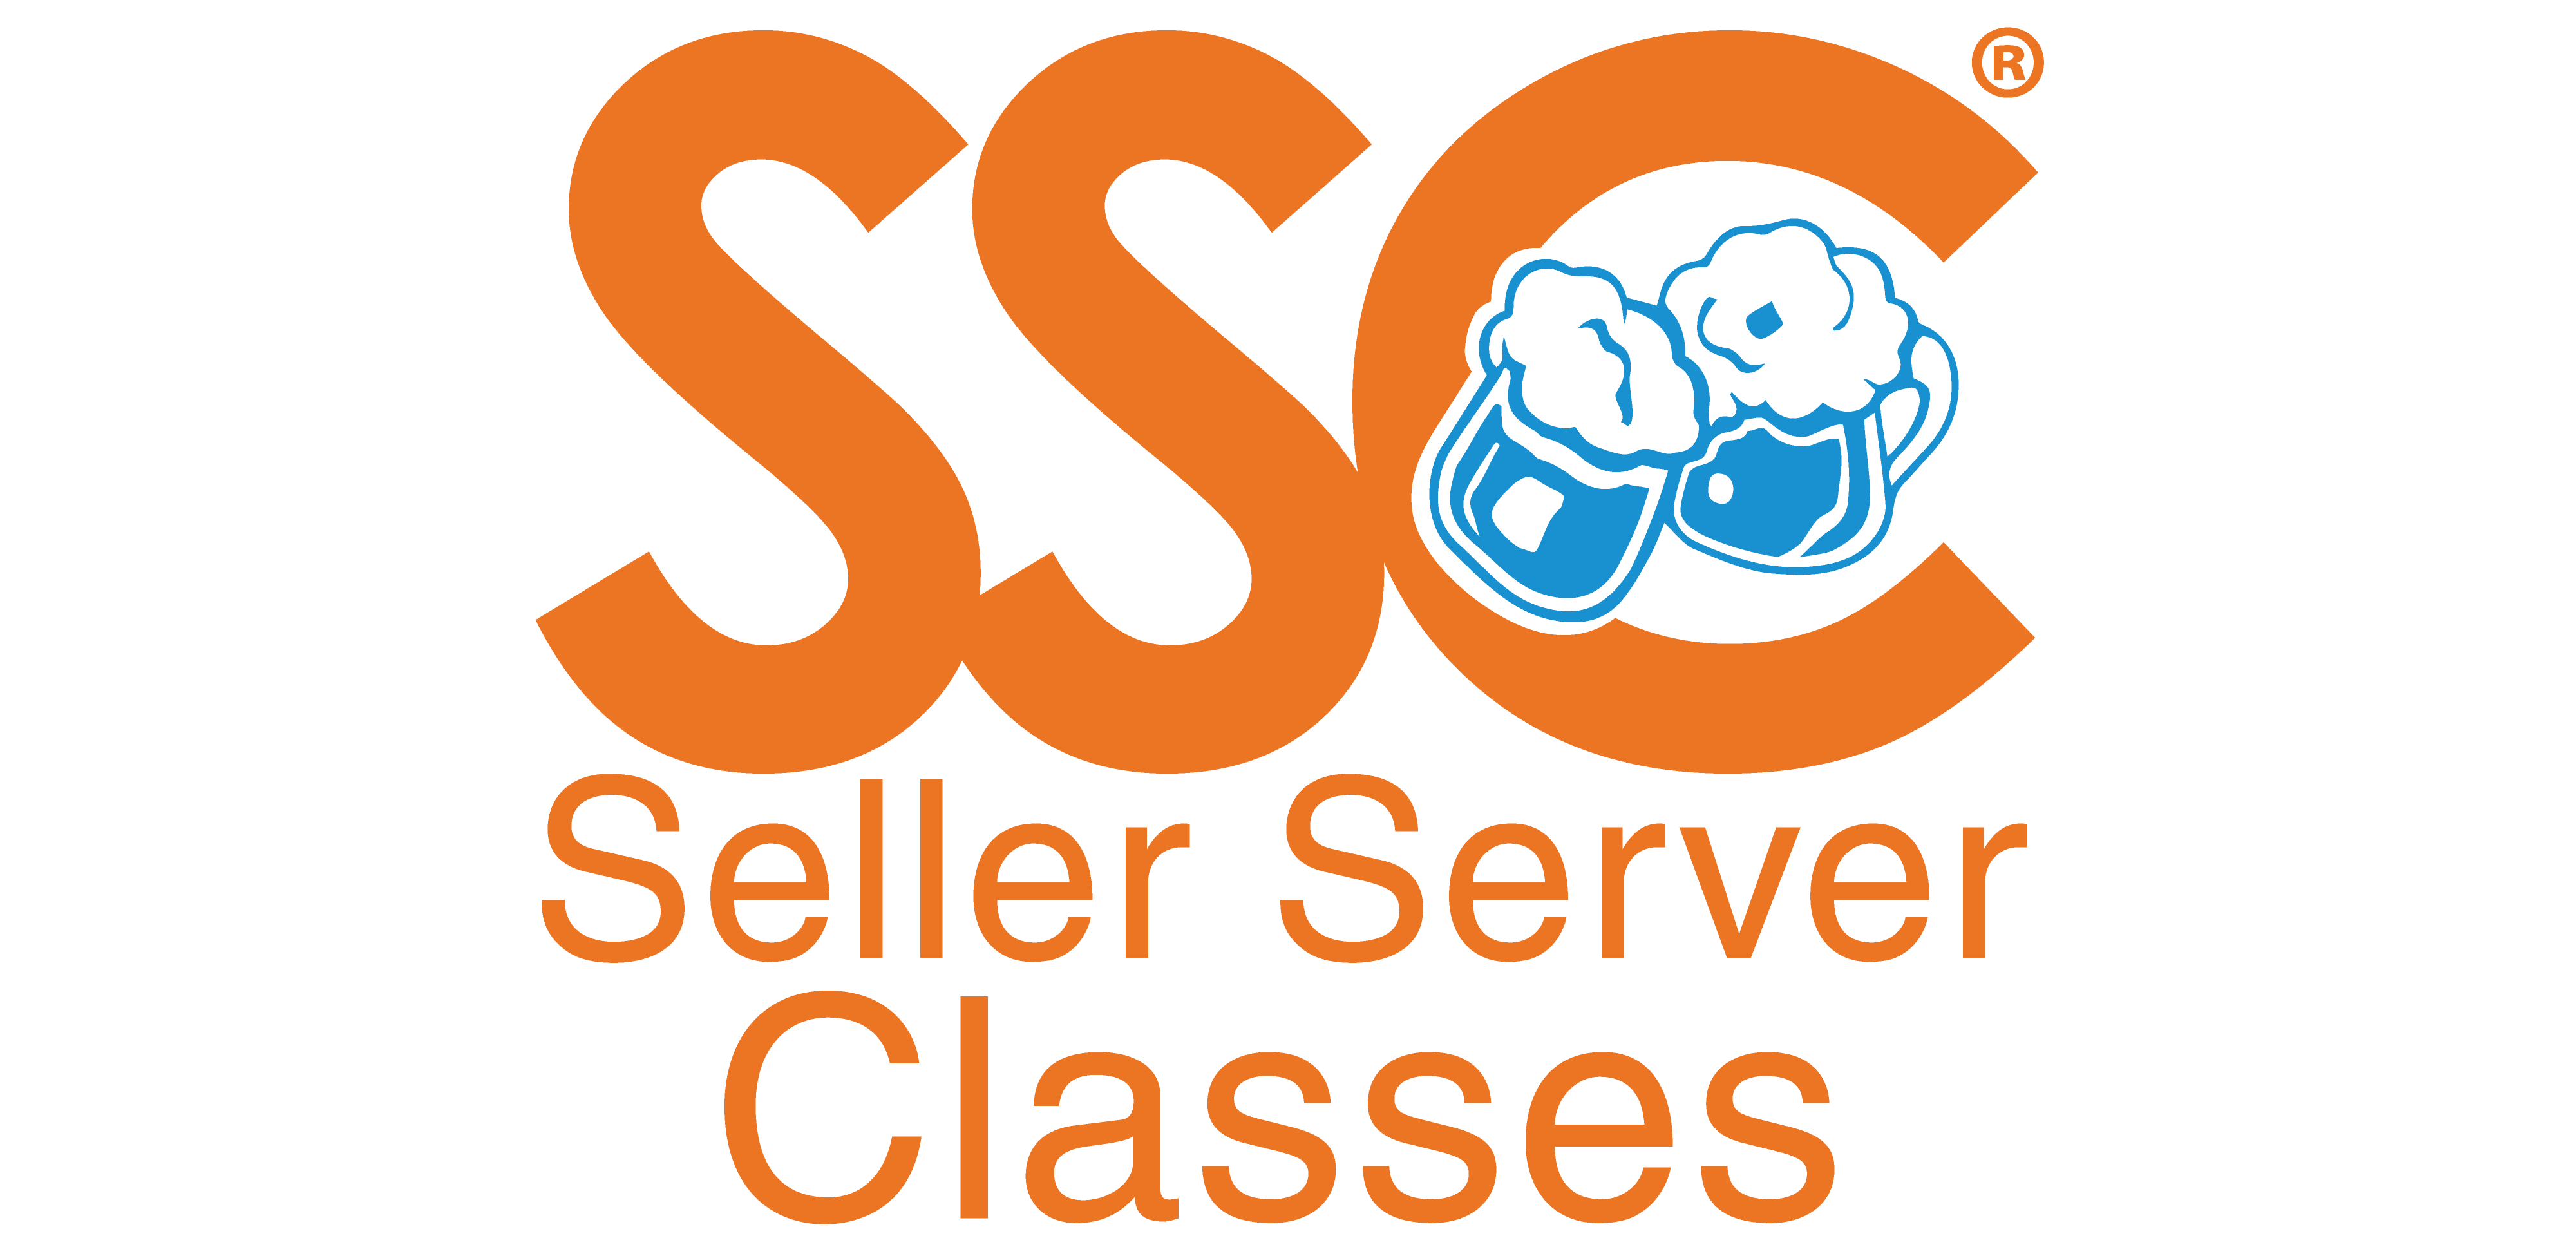 Seller Server Classes